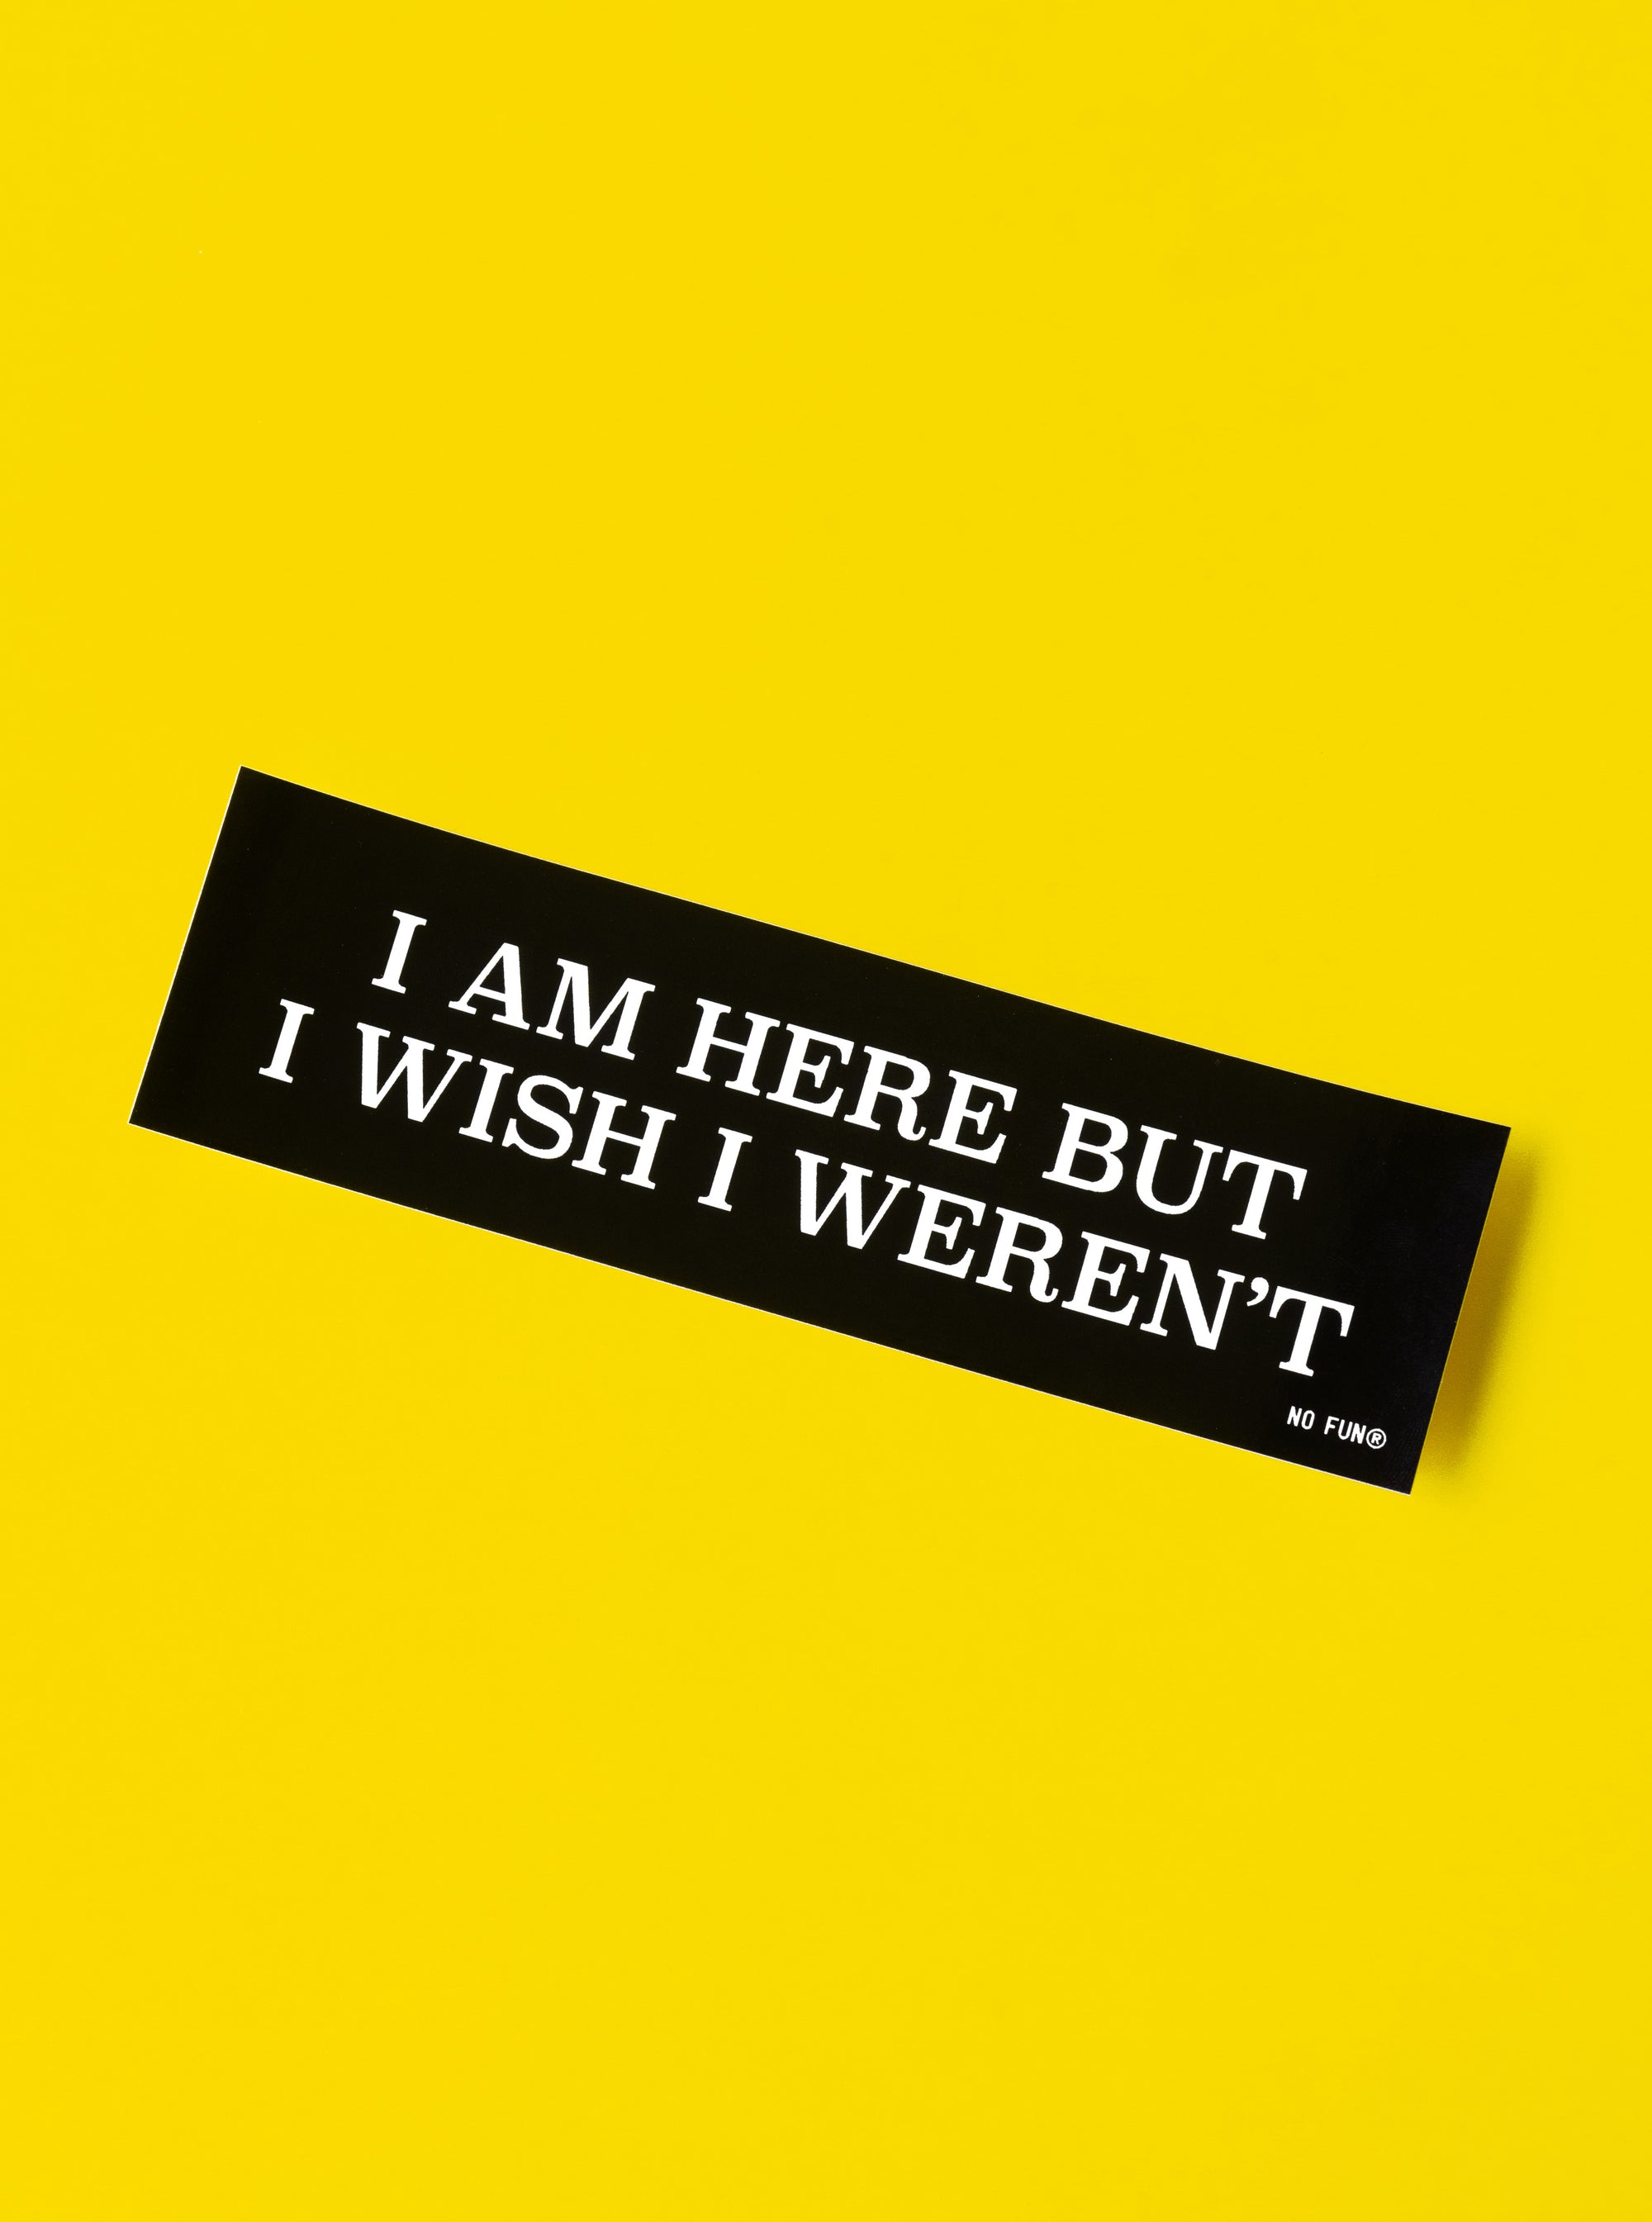 "I Am Here But I Wish I Weren't" Bumper Sticker